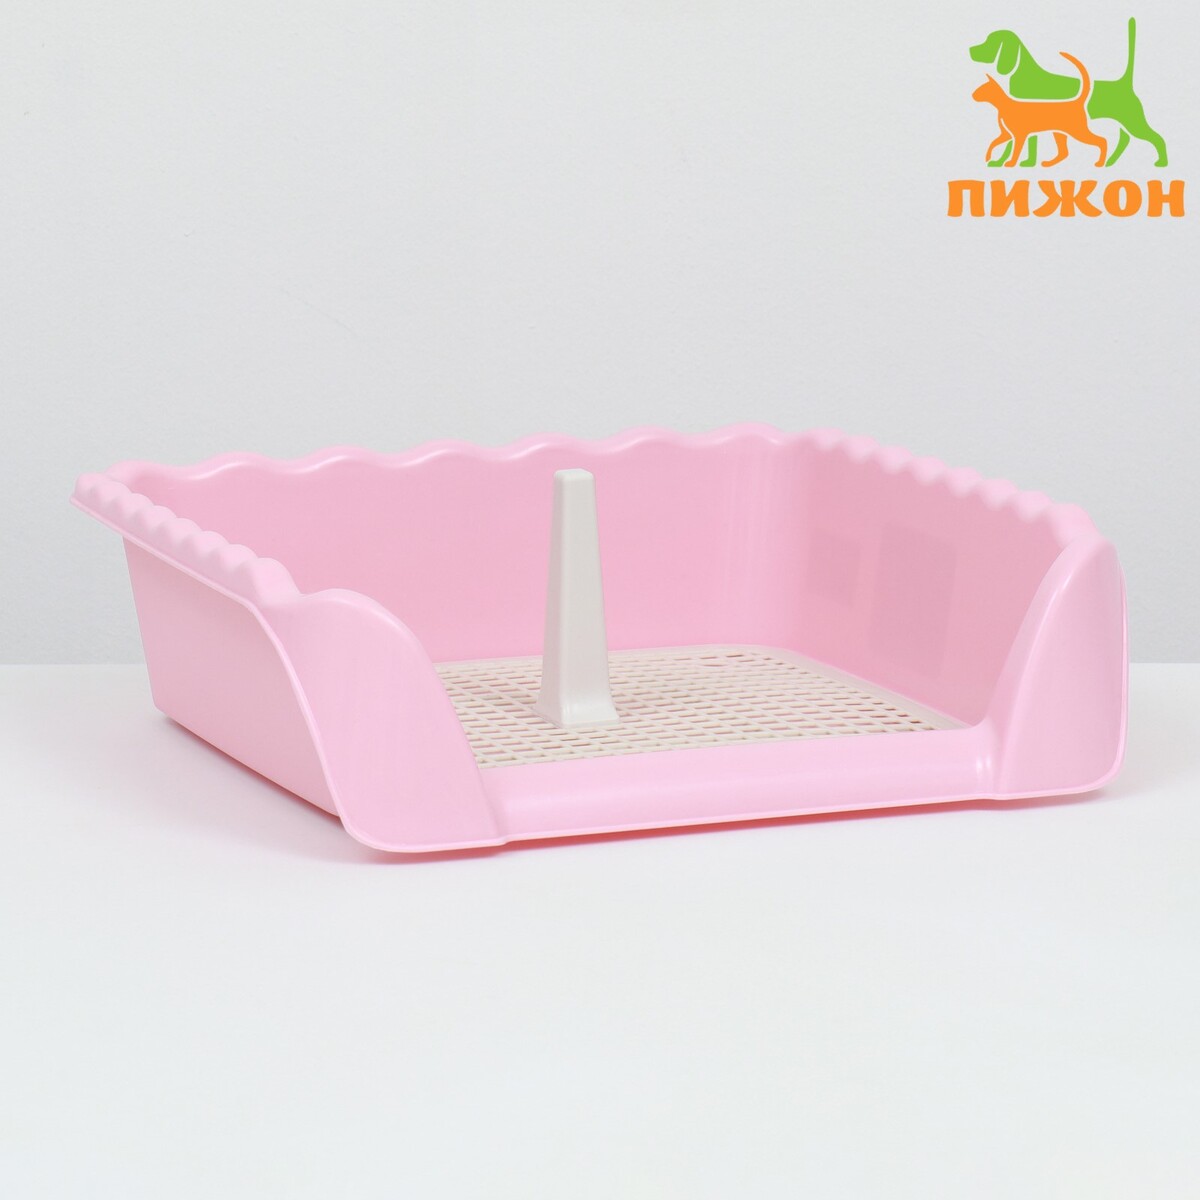 Туалет для собак с высокими бортами и съемной сеткой 38х36х12 см, розовый туалет для собак 46 5 х 35 5 х 5 5 см со стенкой съемной решеткой и столбиком розовый